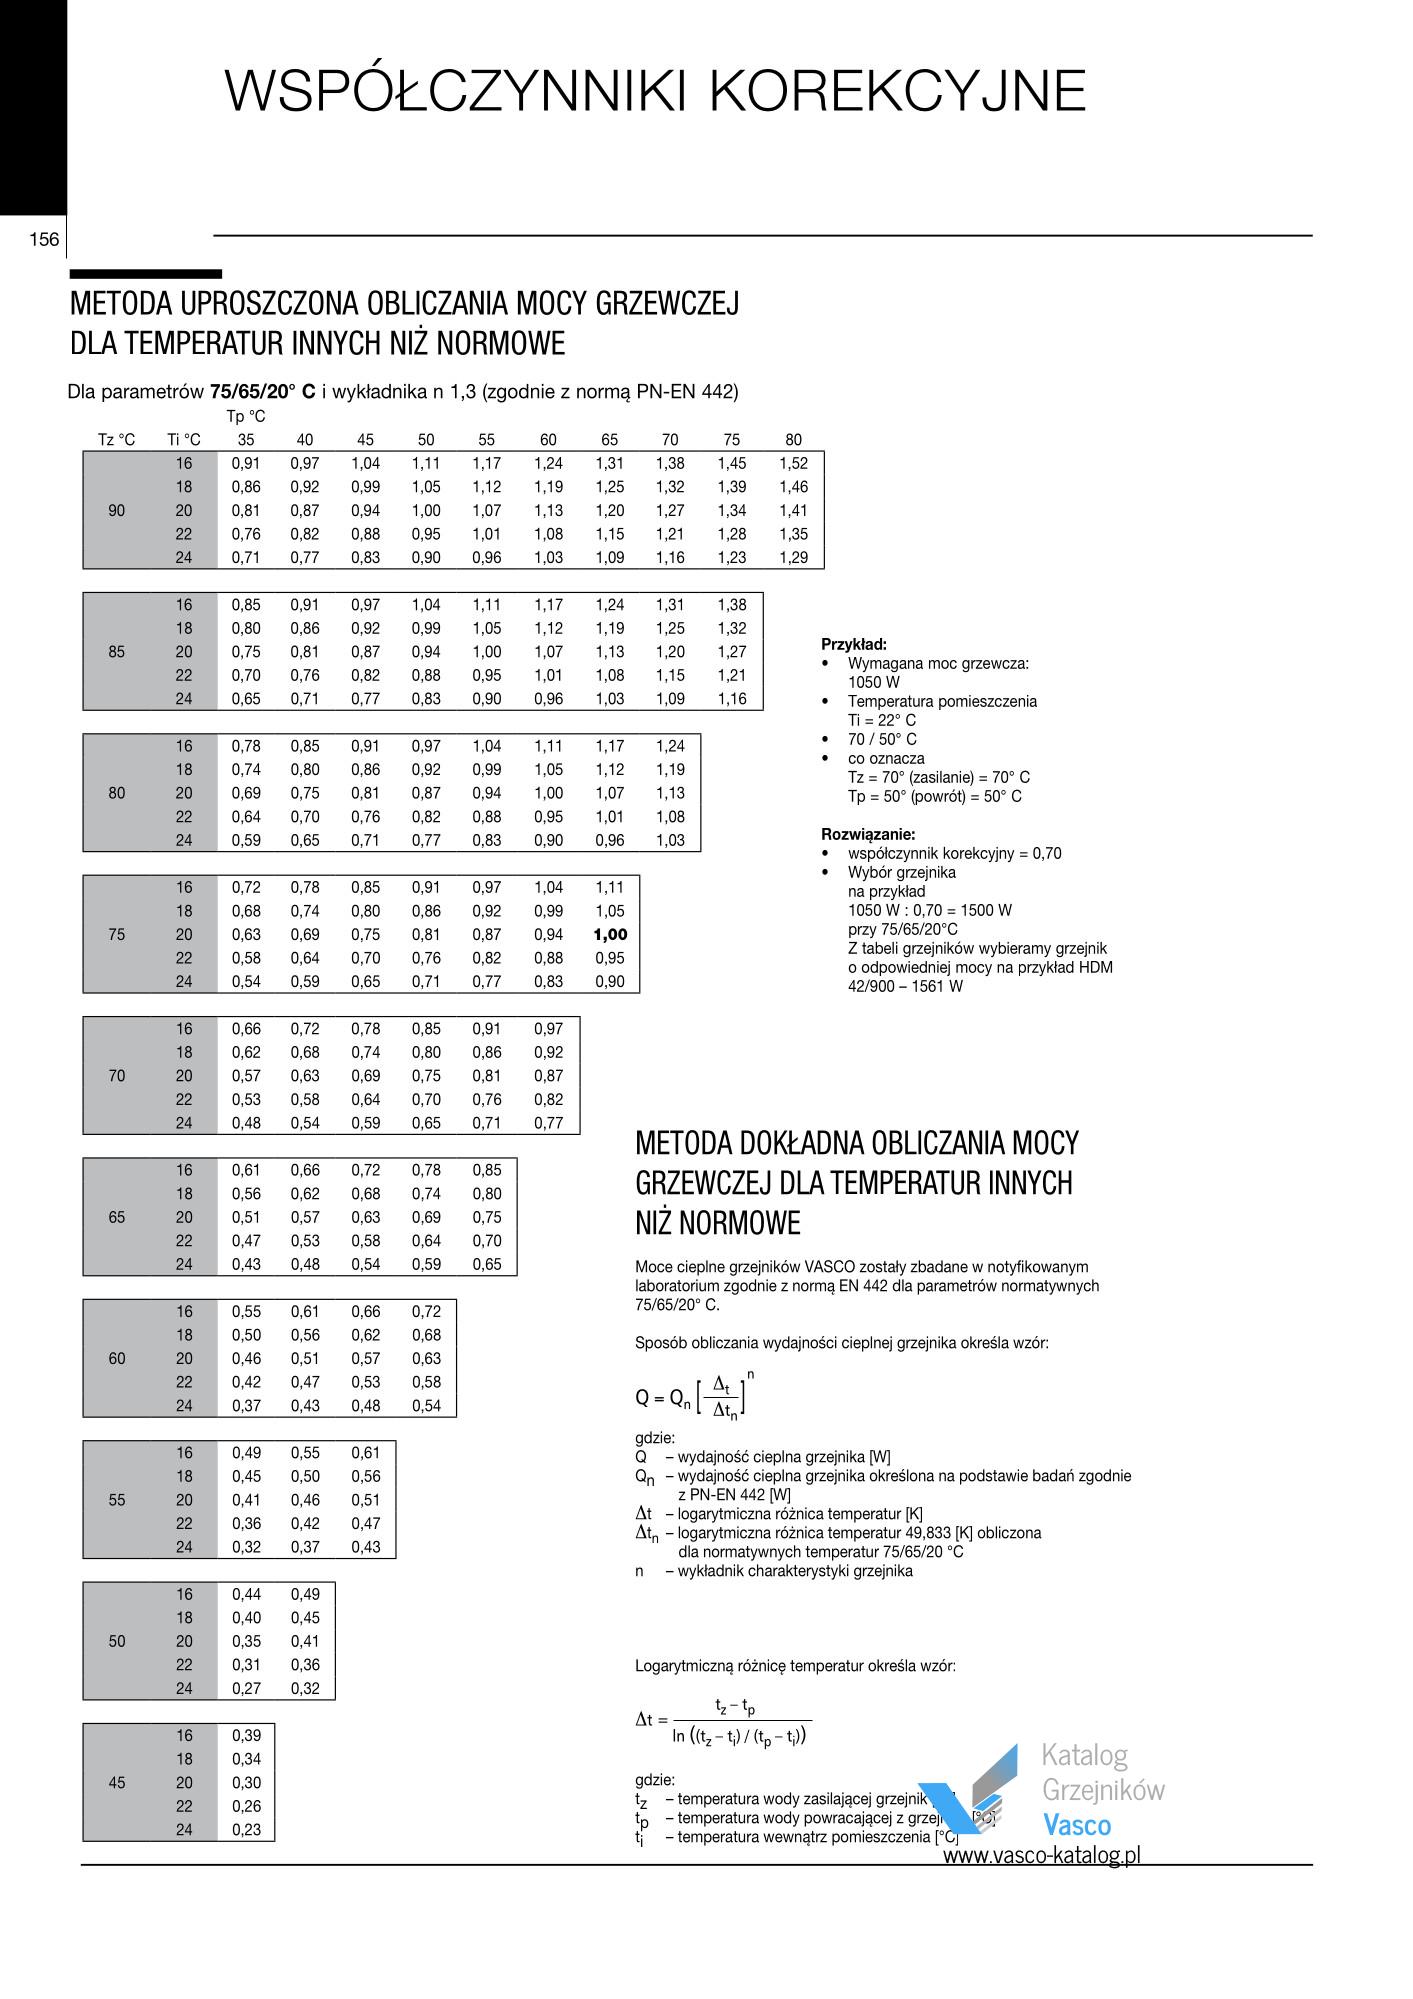 Katalog Vasco 2021 - Współczynniki korekcyjne